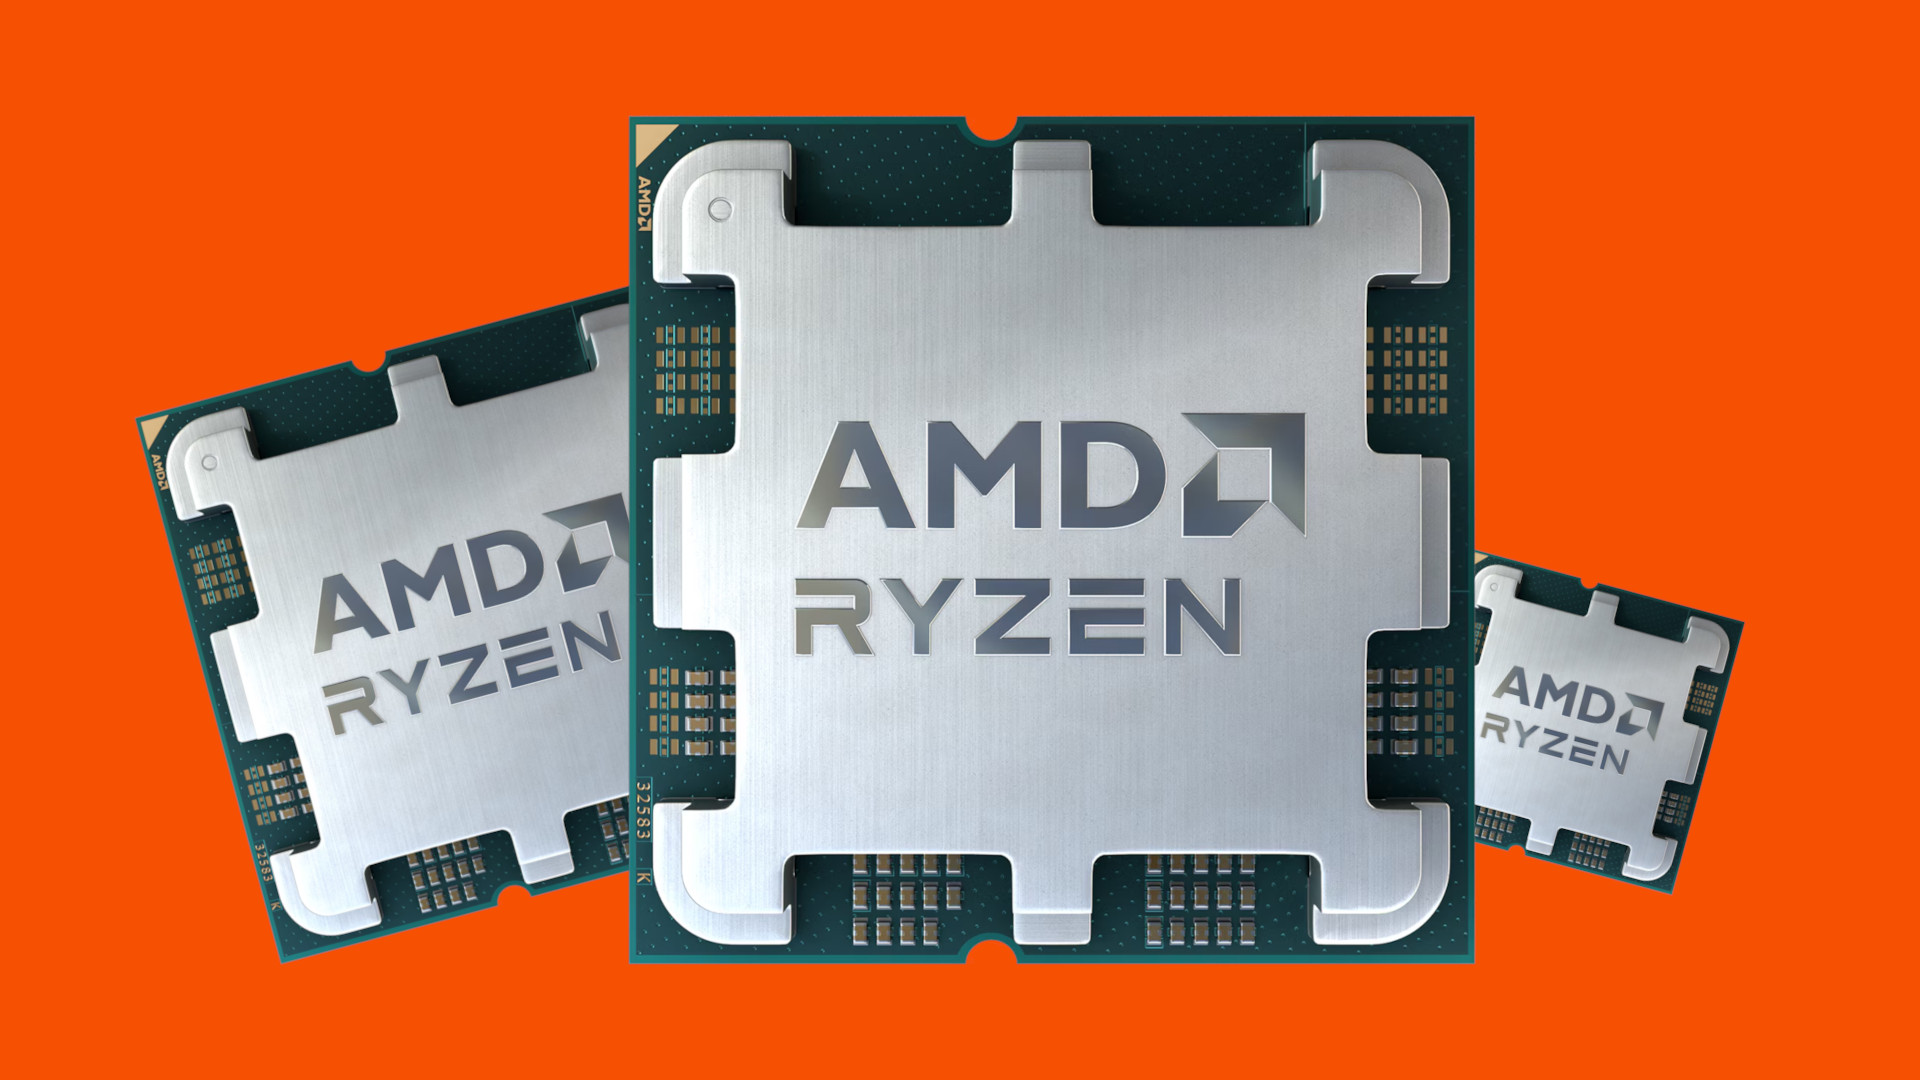 De nieuwe AMD Ryzen CPU's zullen volgens het lek drie kerntypen hebben